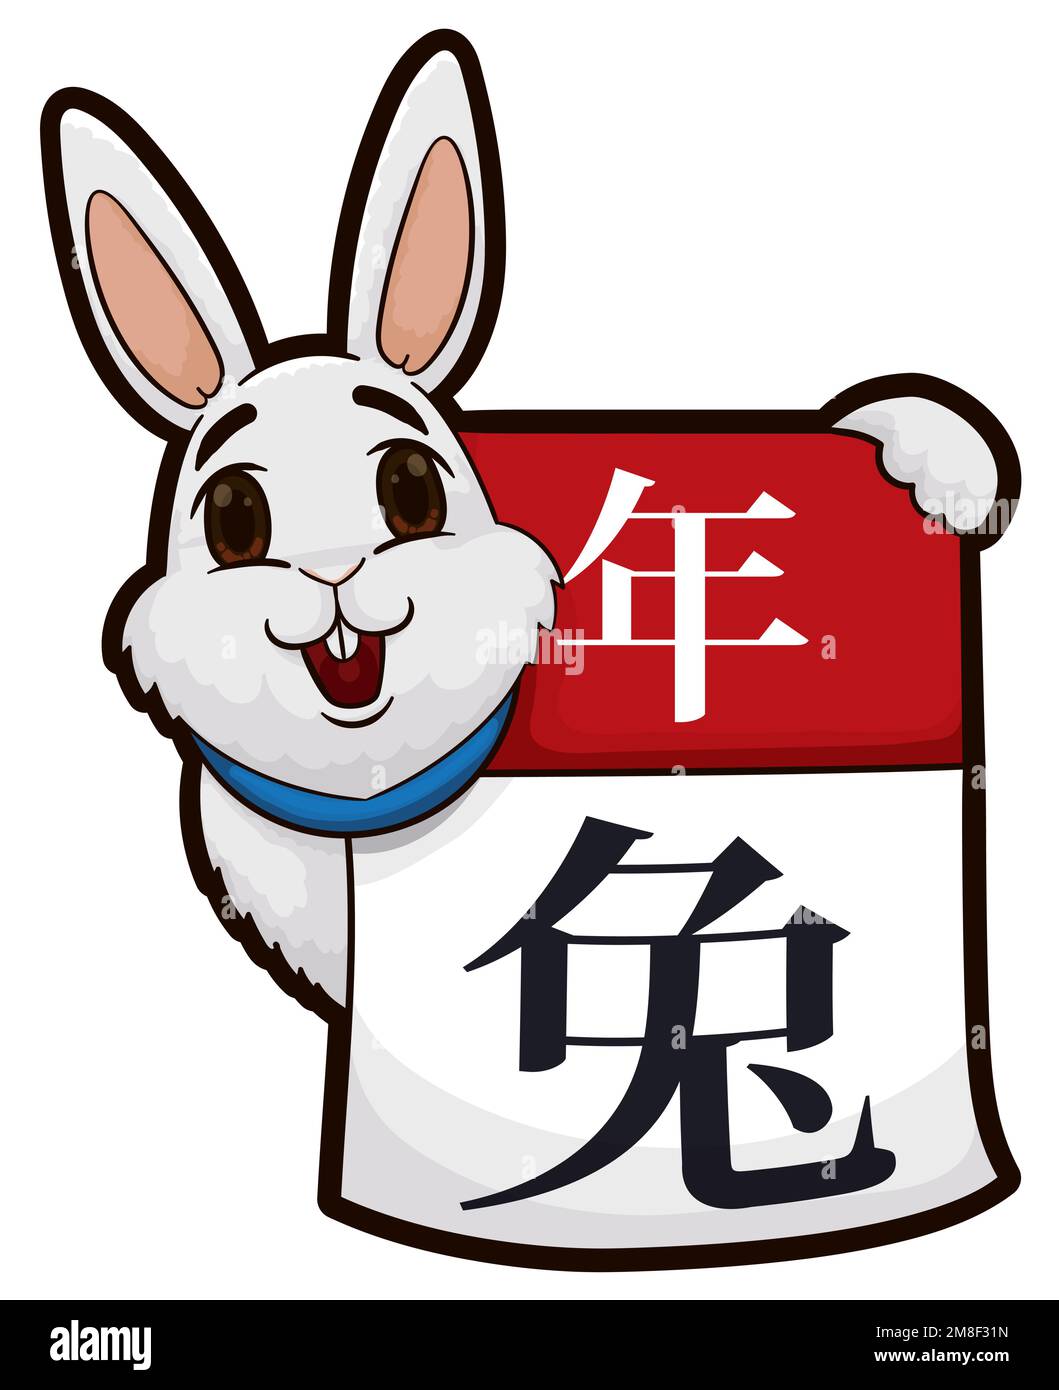 Lapin heureux et blanc tenant un calendrier à feuilles volantes, célébrant son année chinoise zodiaque (écrit en calligraphie chinoise). Illustration de Vecteur